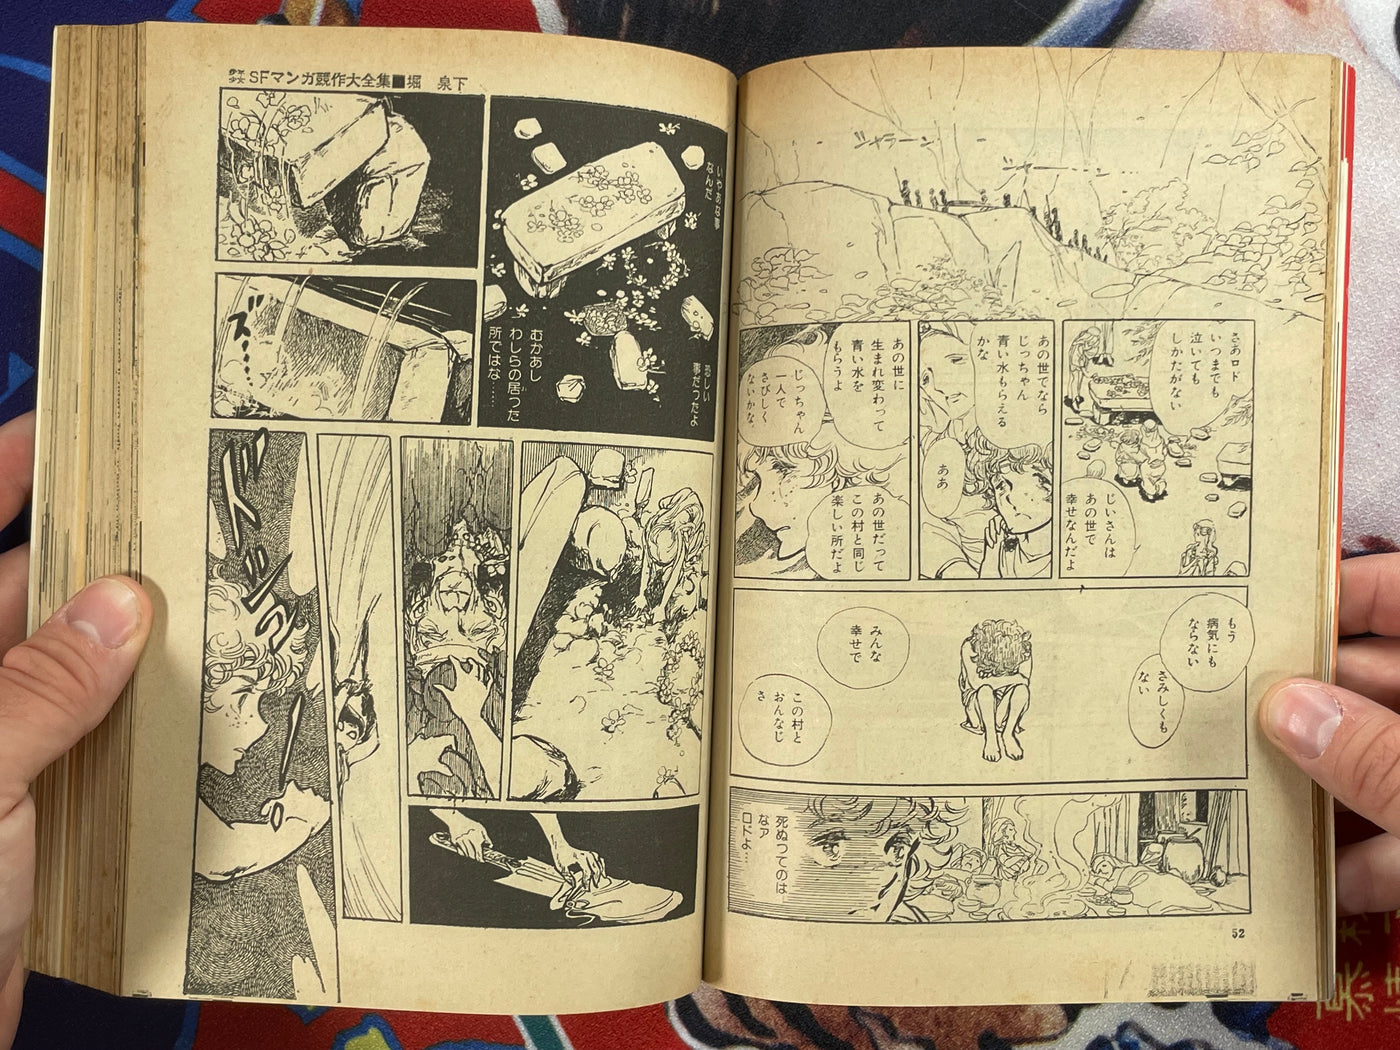 SF Manga Kyosaku Big Collection Magazine Part 15 - 7/1982